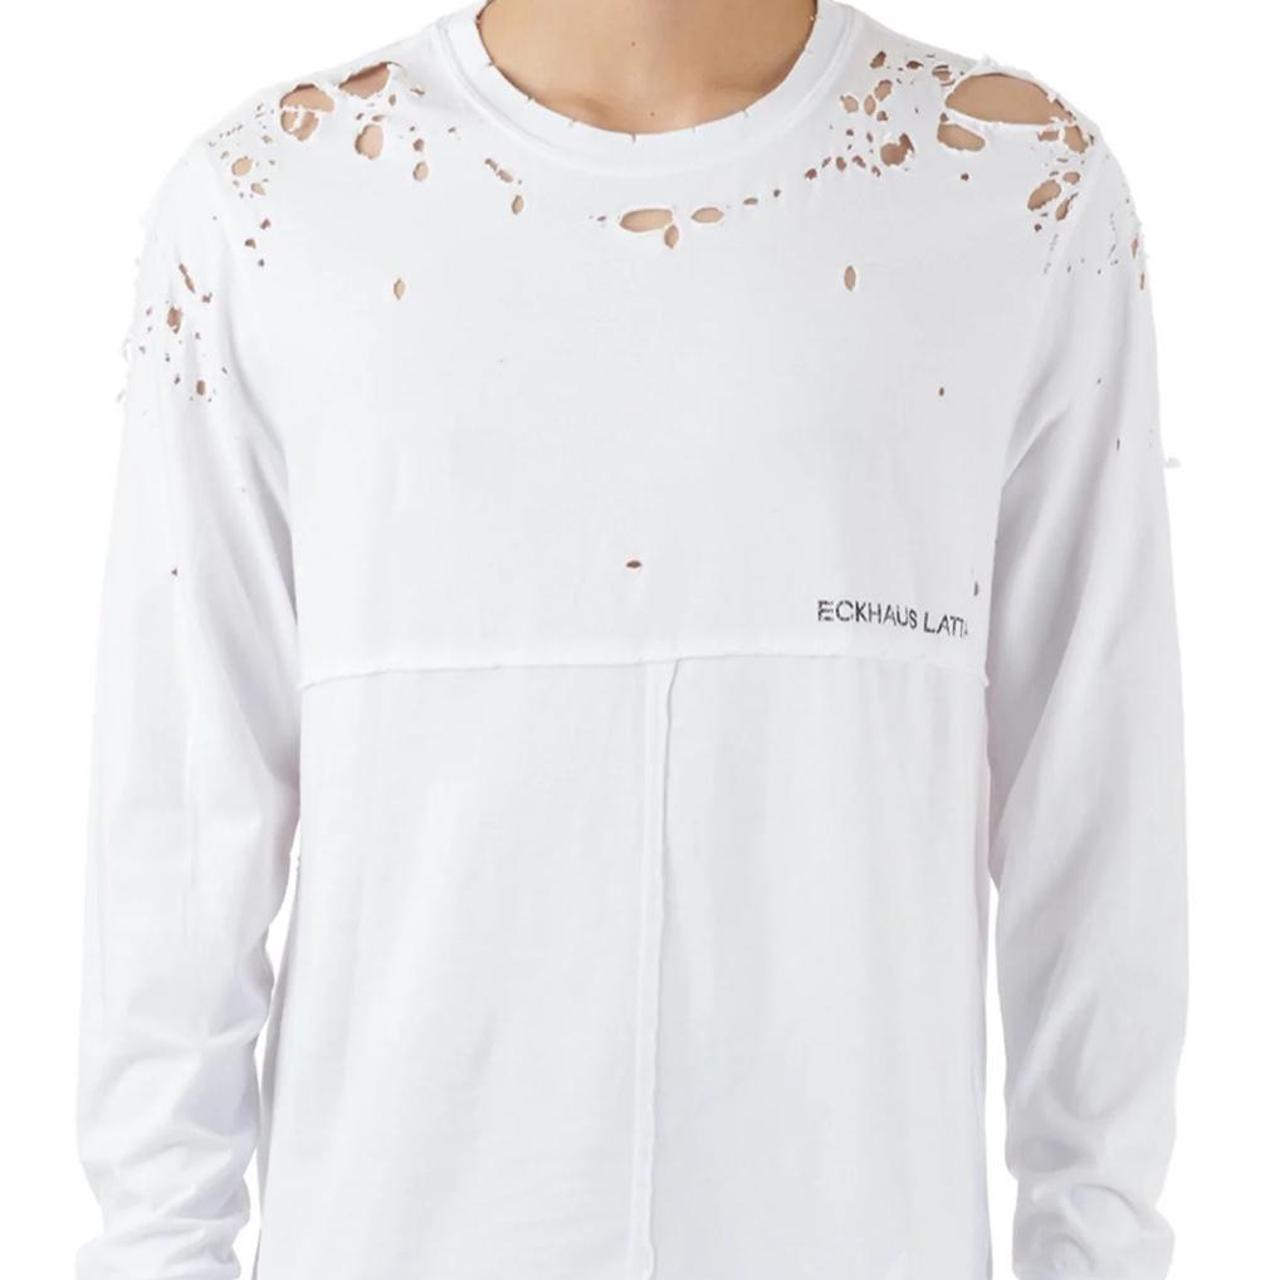 Eckhaus Latta Men's White Shirt